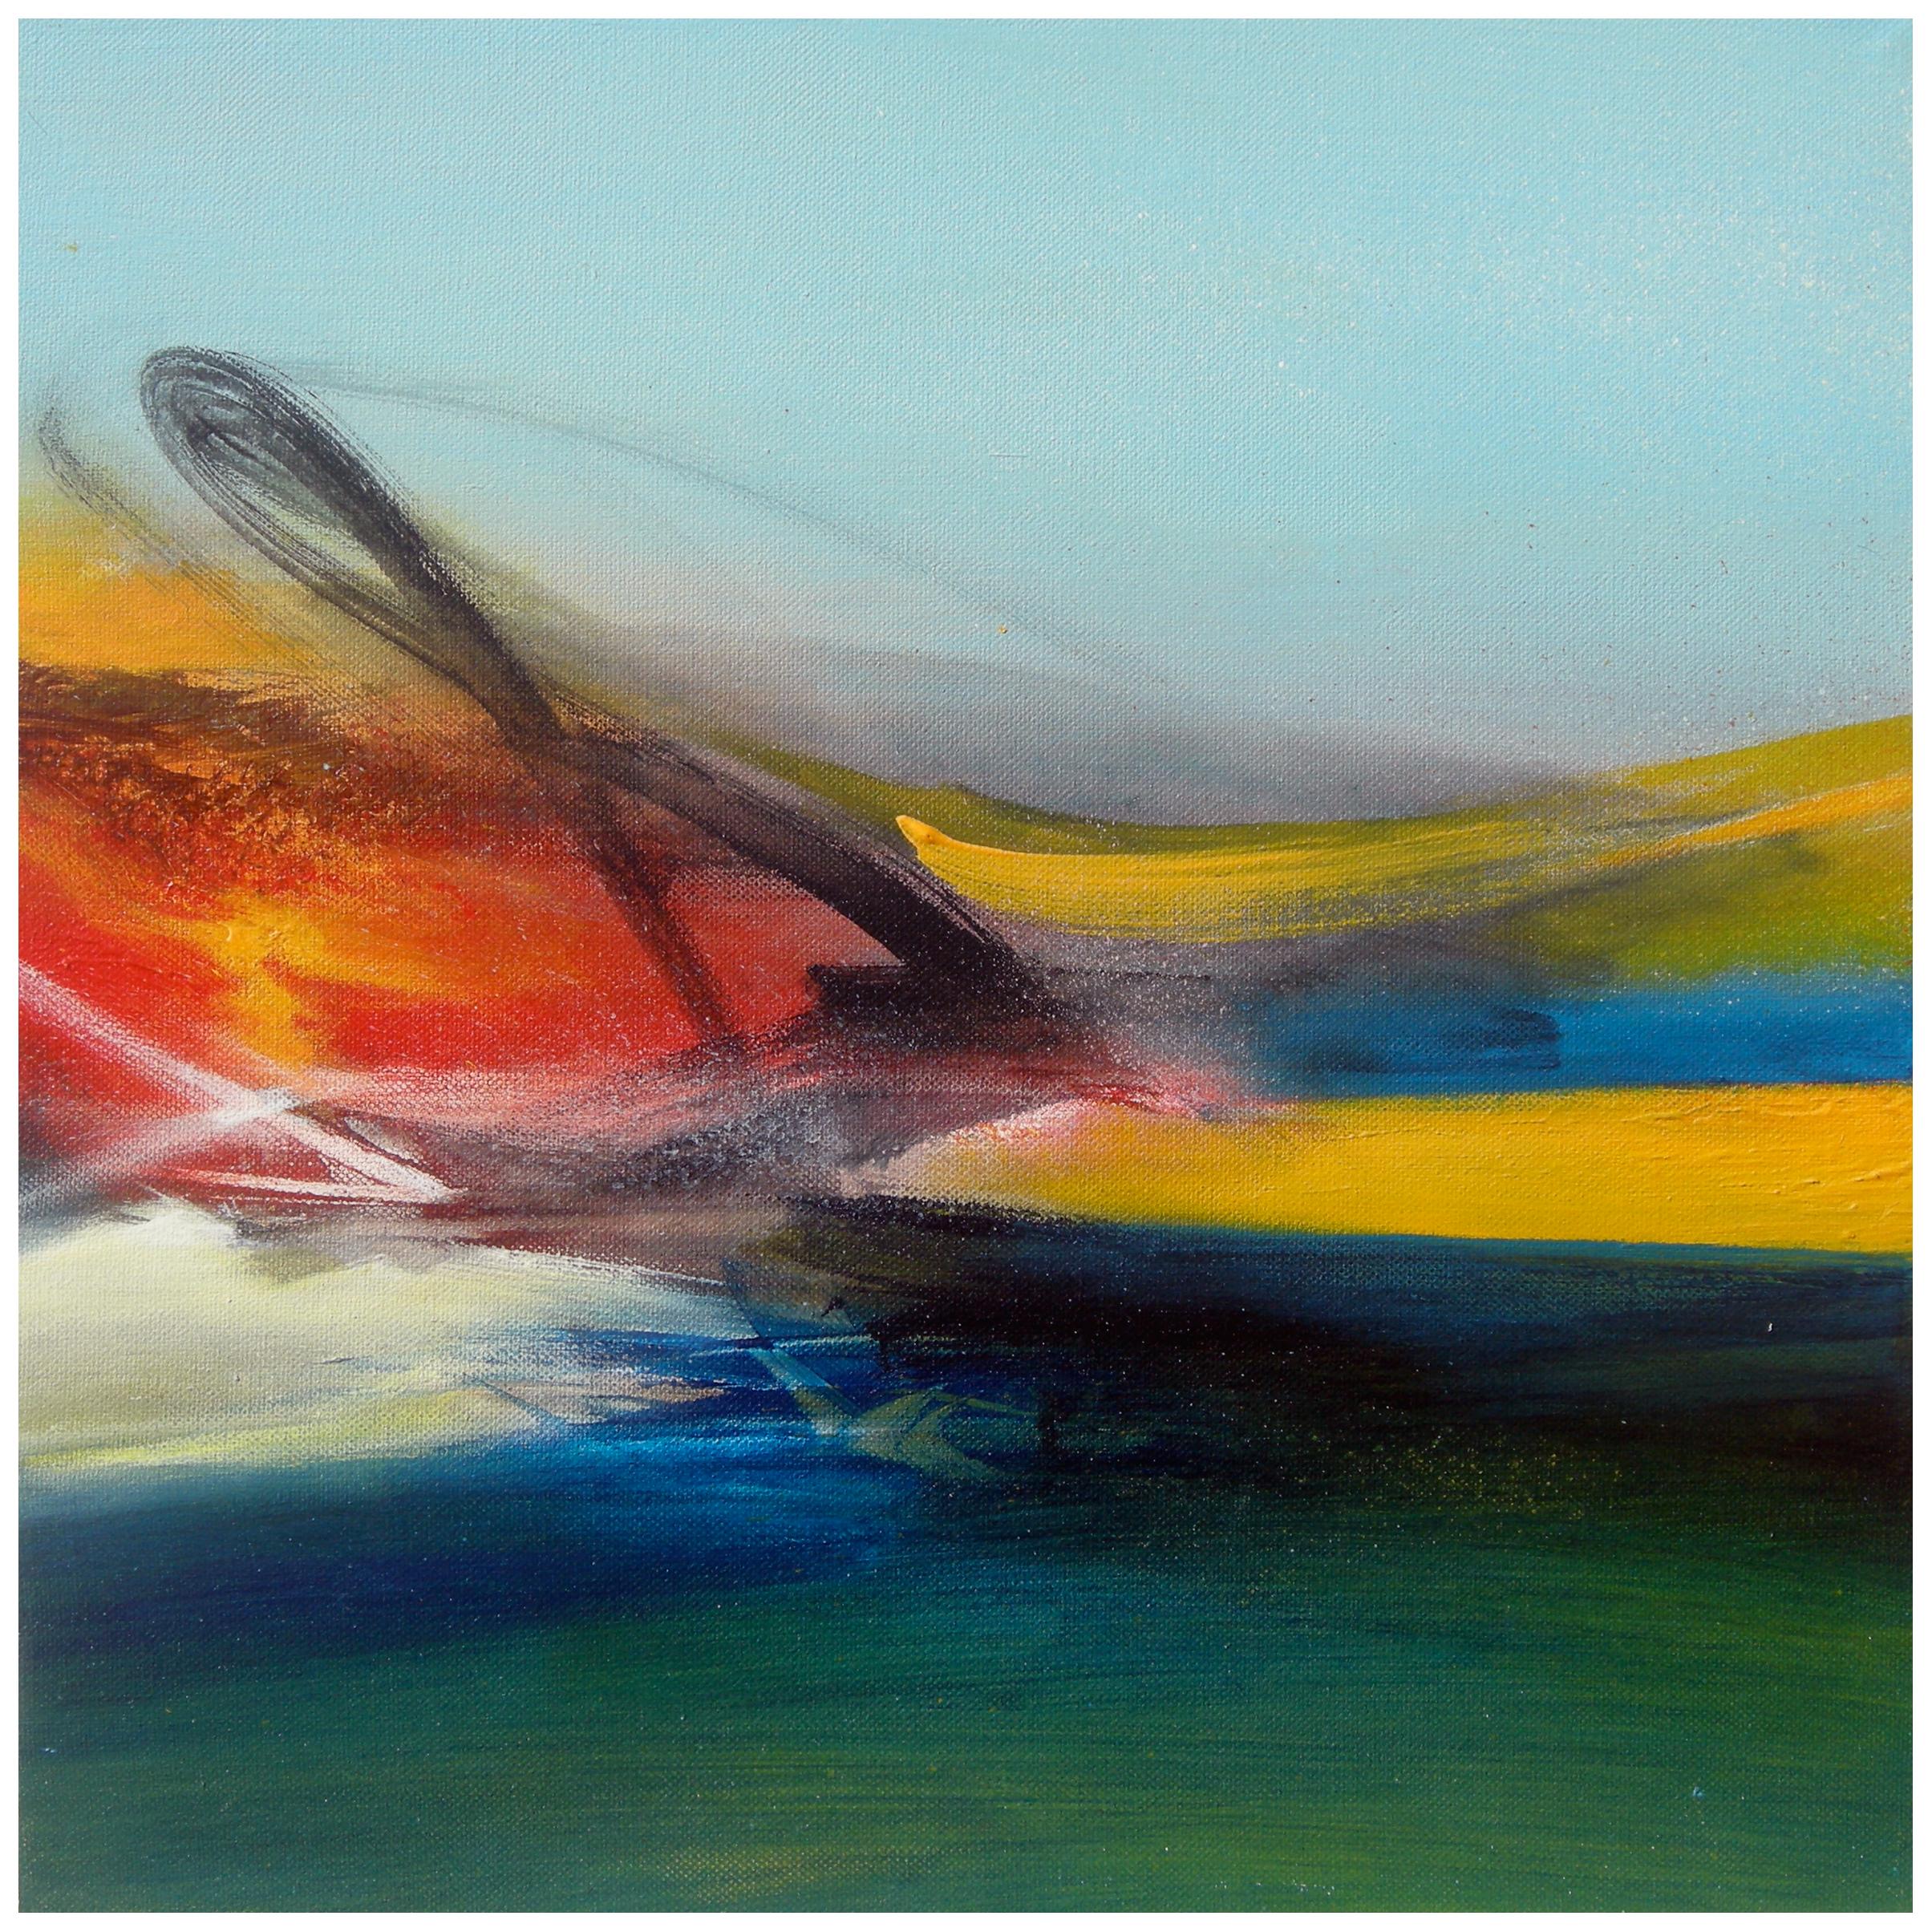 Abstract Painting Philippe Saucourt - " Paysage imaginaire" Peinture abstraite vert, bleu, jaune et rouge